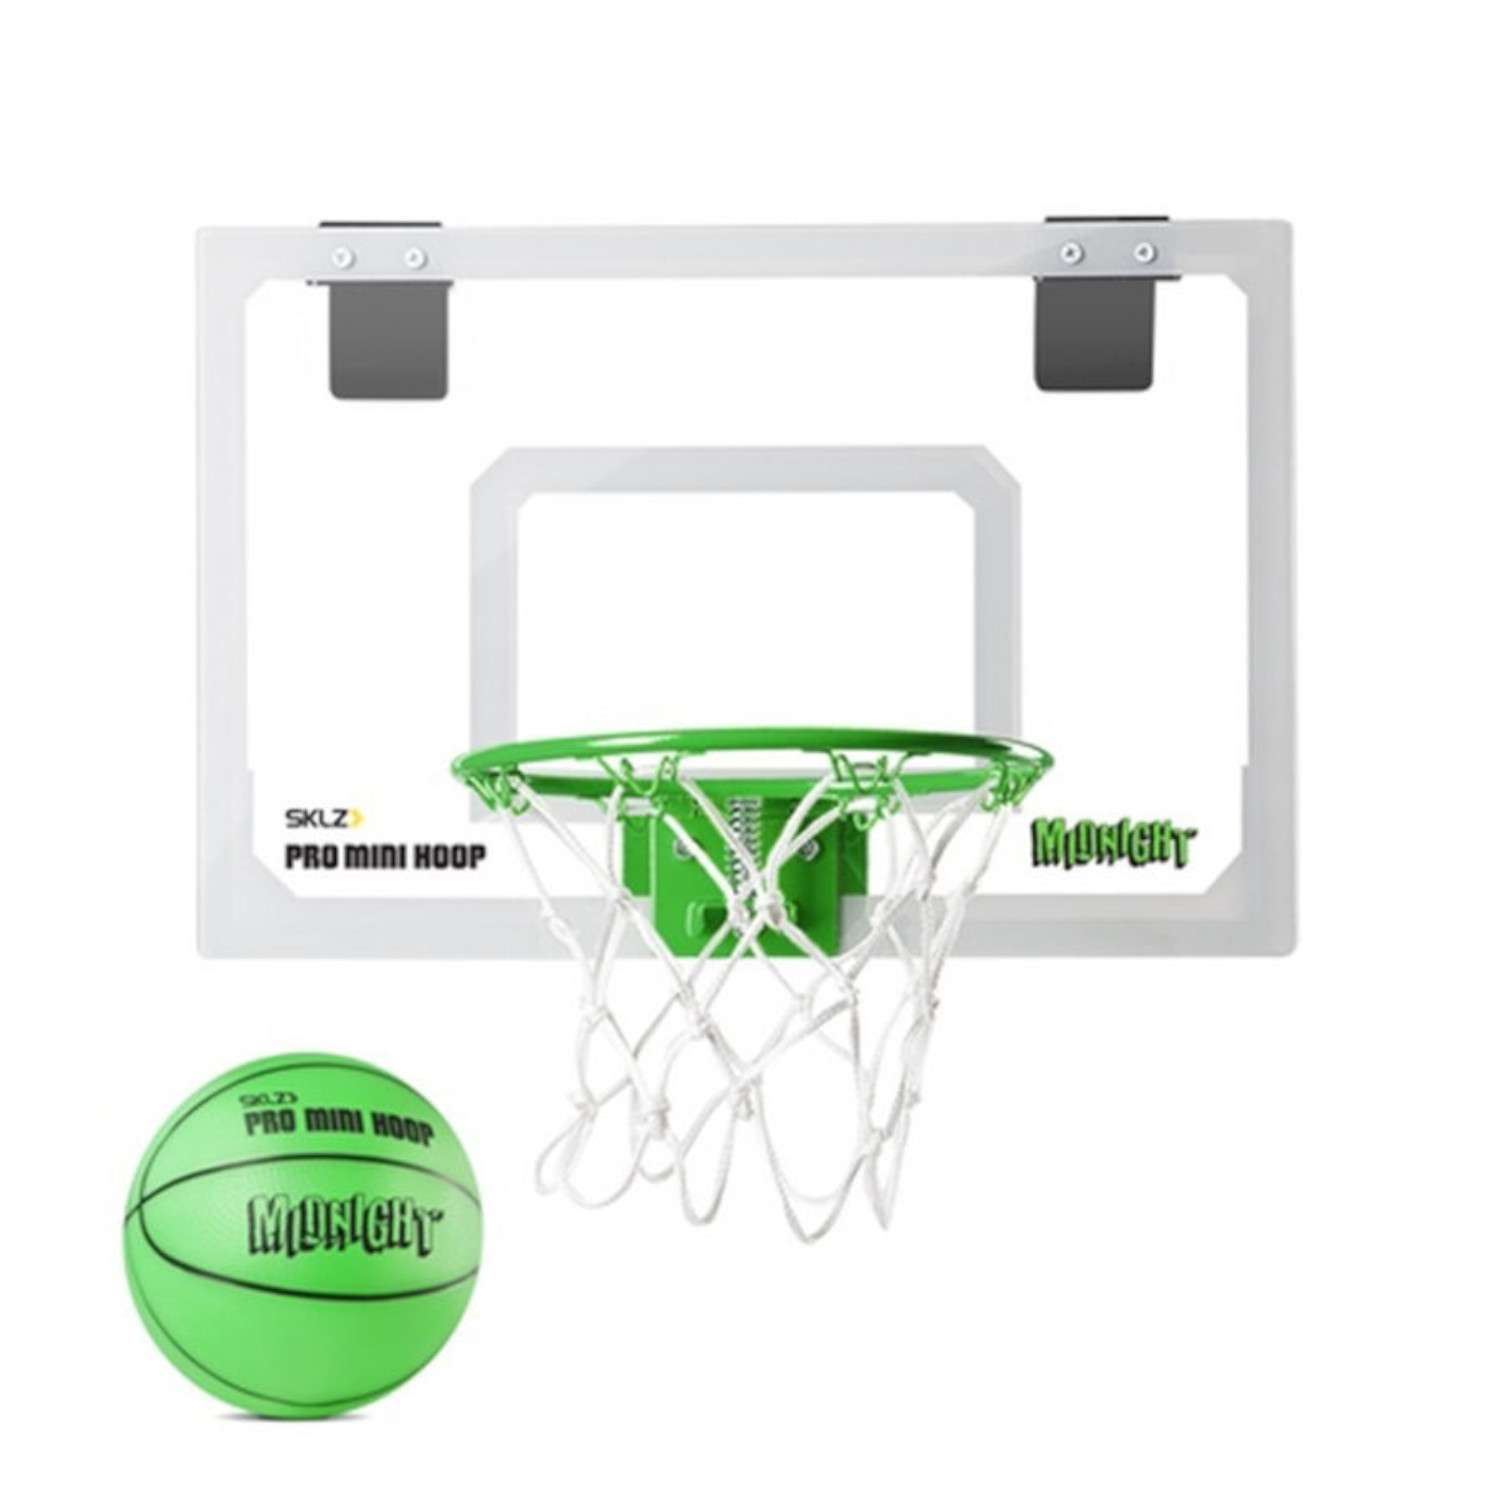 Игровой набор SKLZ баскетбольный Pro Mini Hoop midnight 45*30 - фото 1